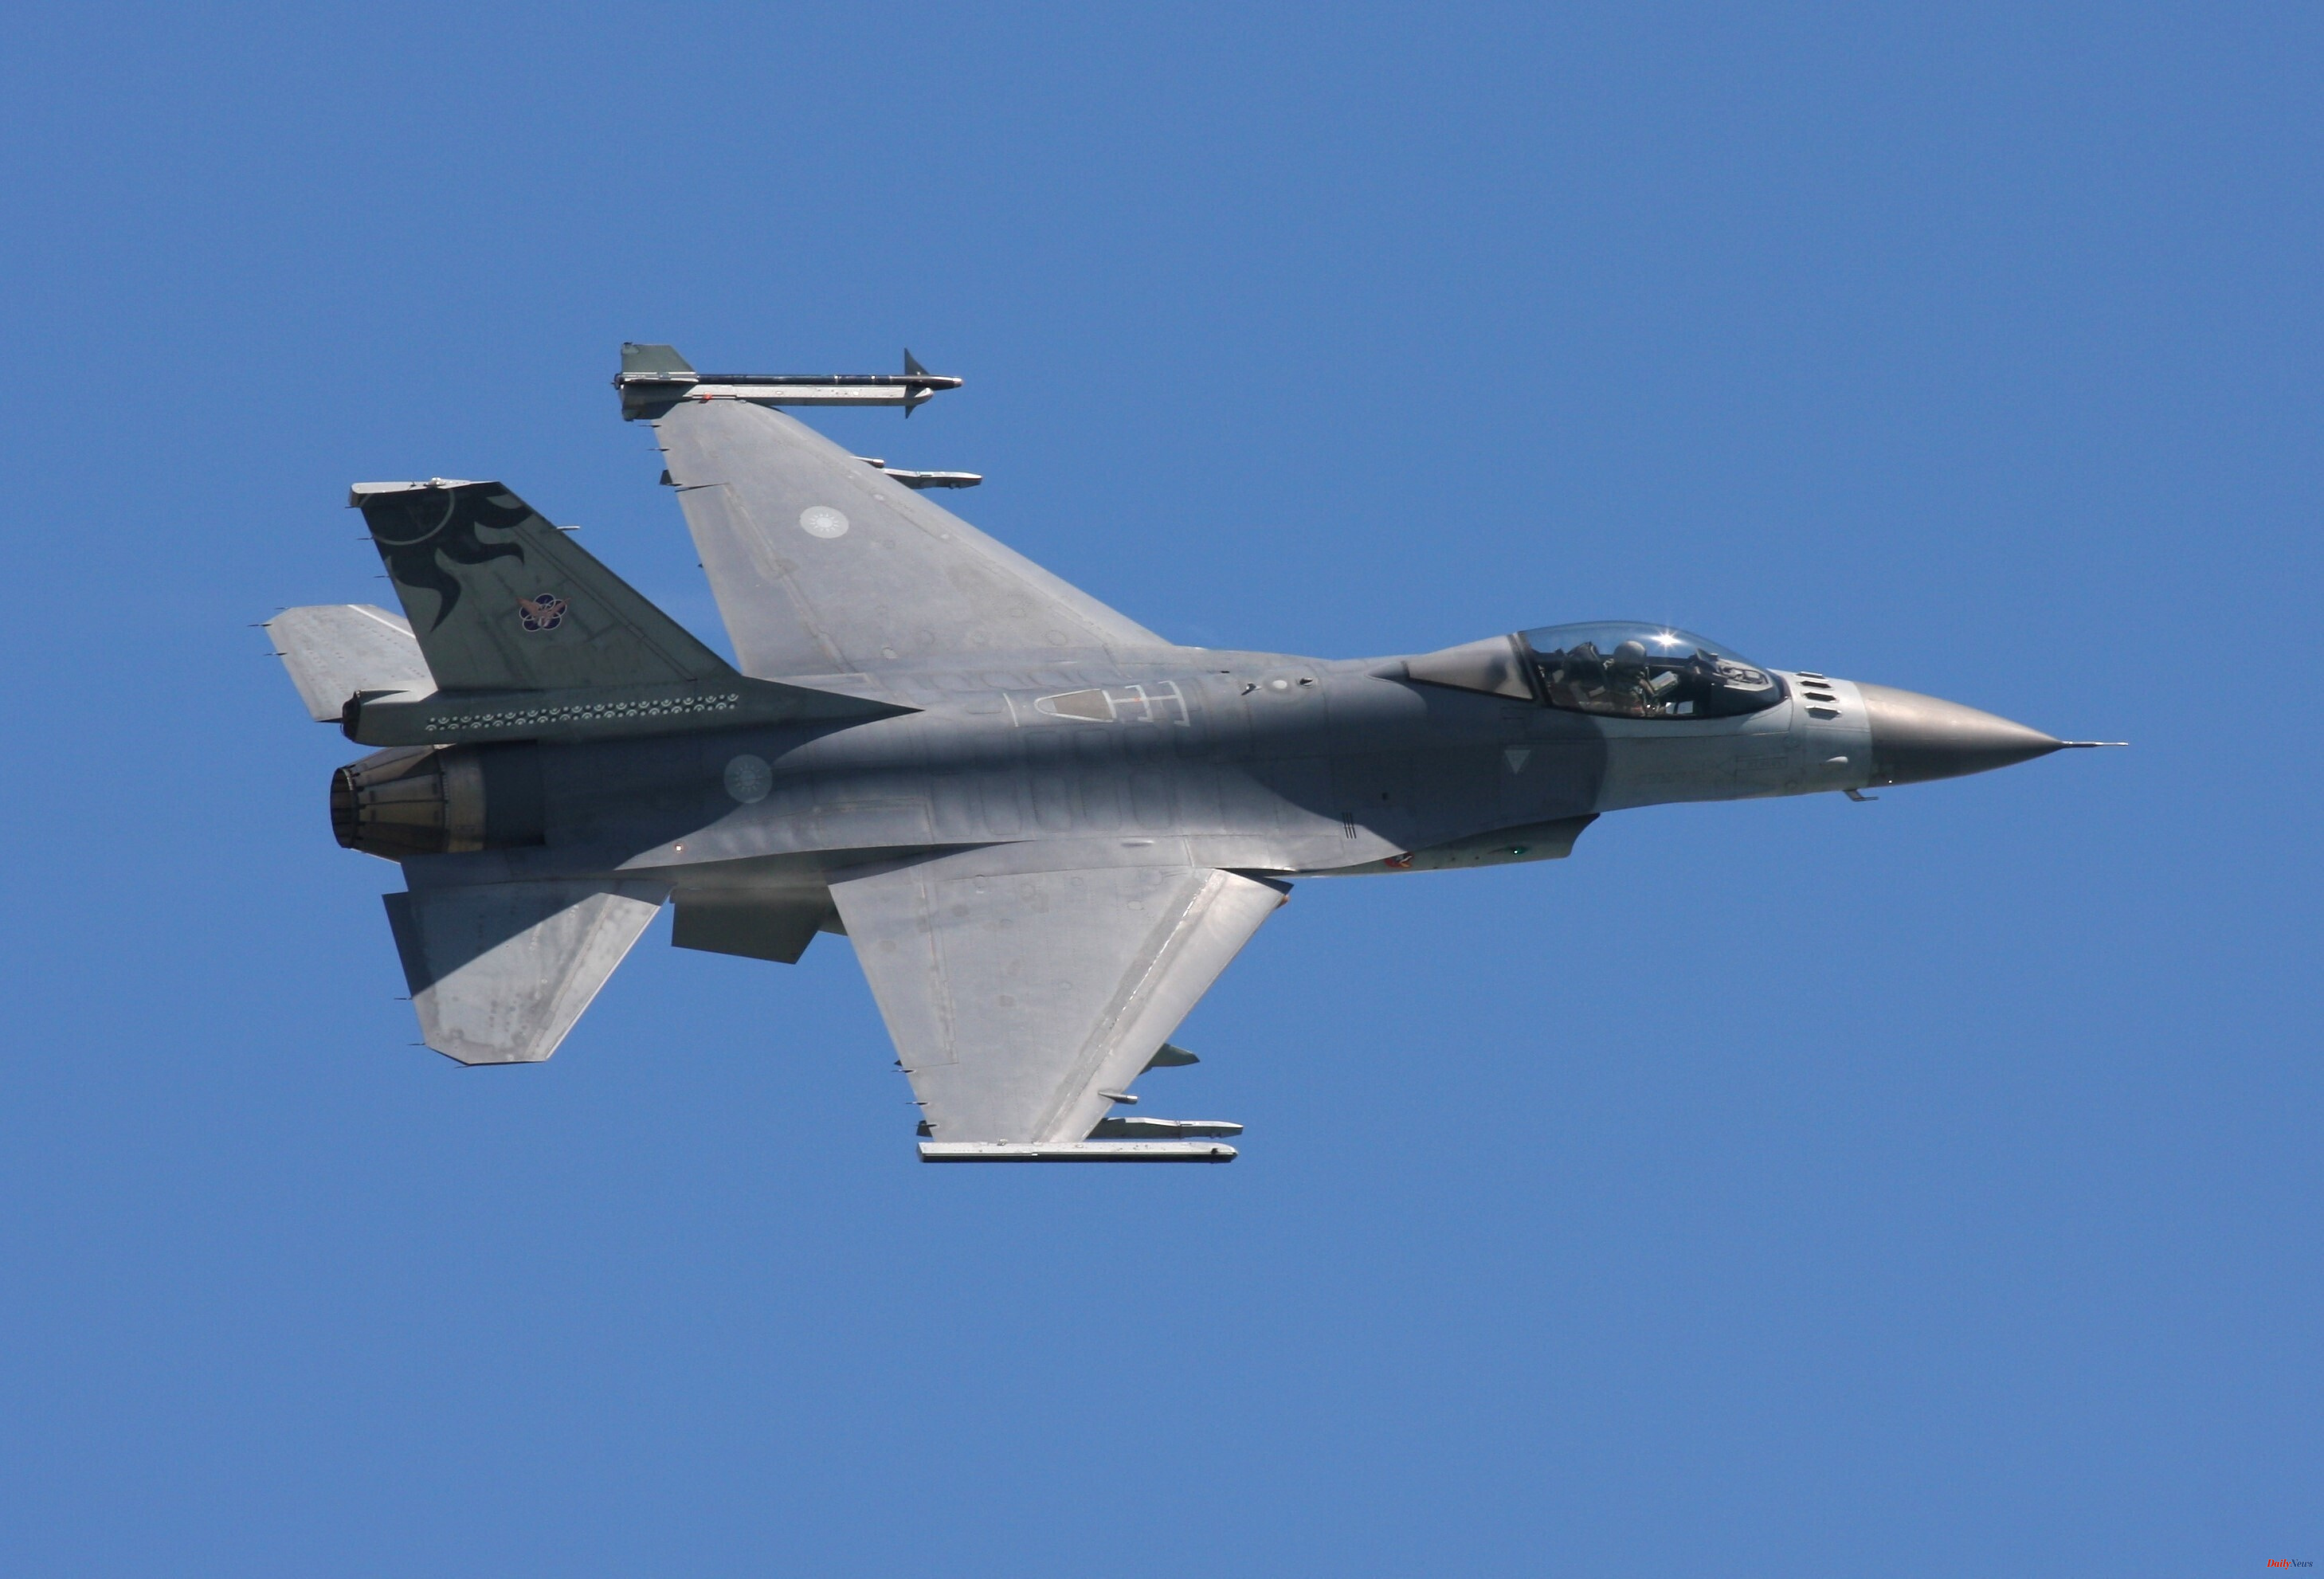 Ukraine War Allies to supply F-16 jets to Ukraine 'soon', NATO says